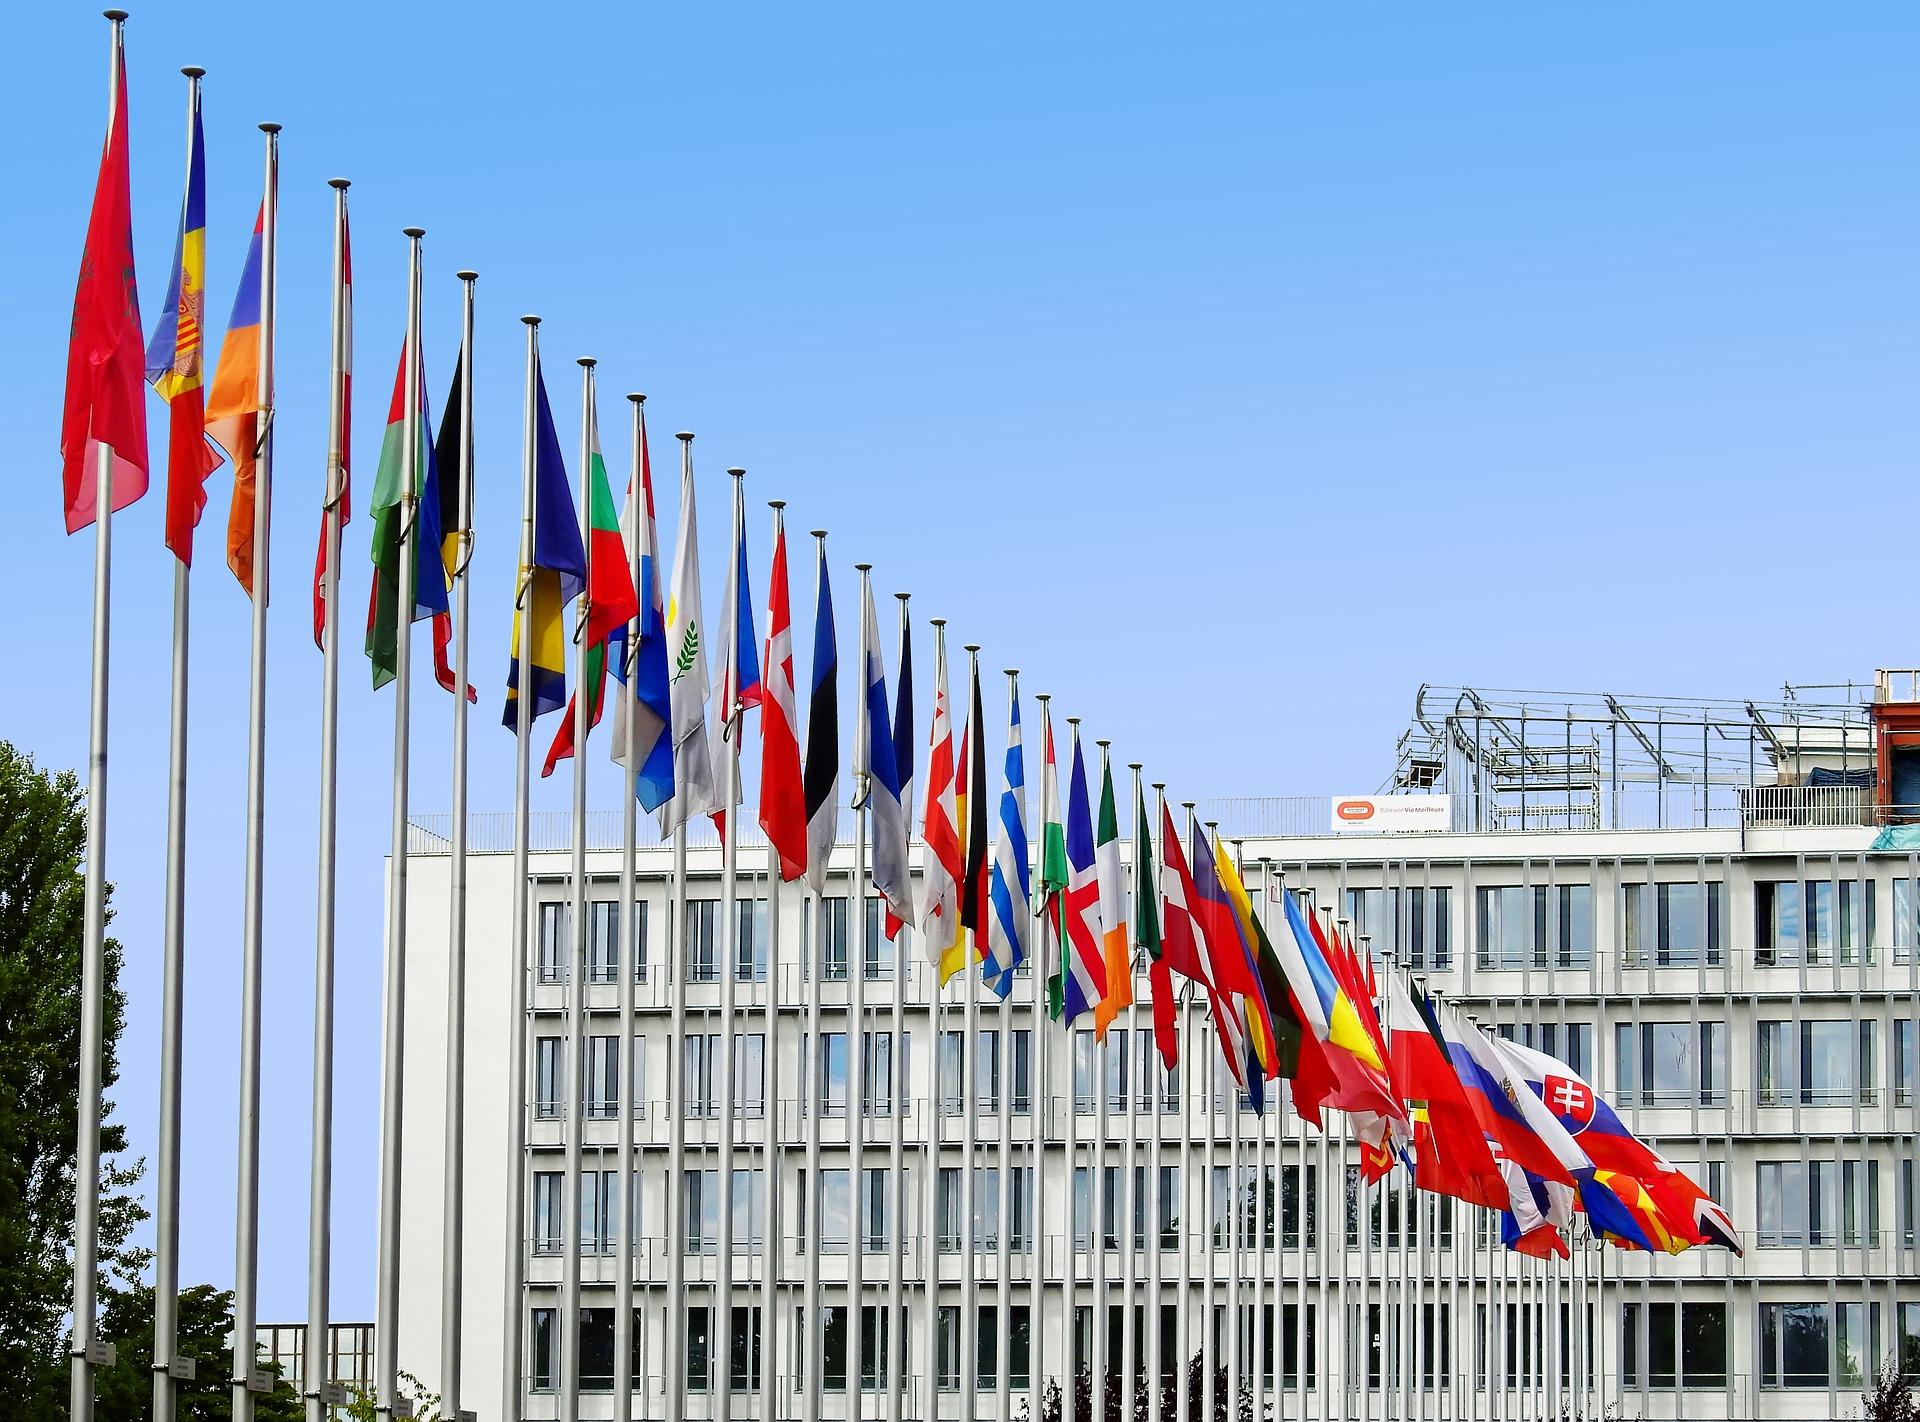 Banderas de países de la Unión Europea en el exterior del Parlamento Europeo en Estrasburgo (Francia)